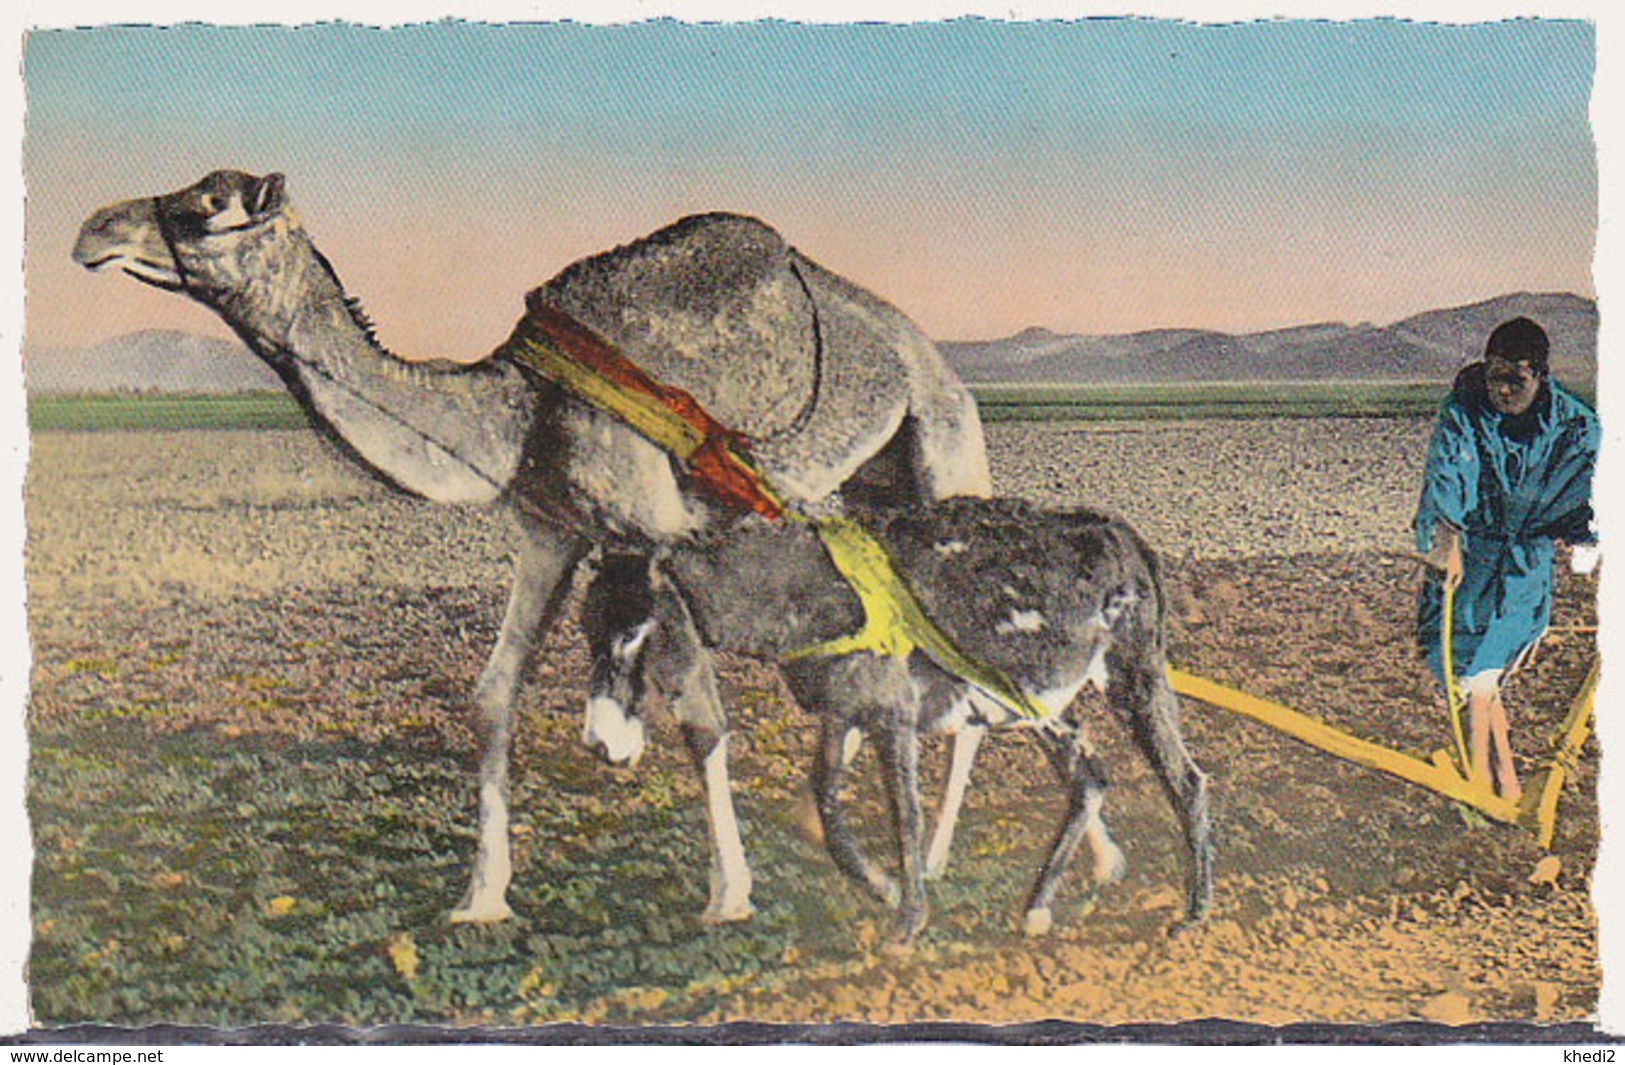 Carte Postale CP - ANIMAL  -CHAMEAU & ANE - CAMEL & DONKEY Postcard - KAMEL & ESEL Postkarte AK - 22 - Ezels